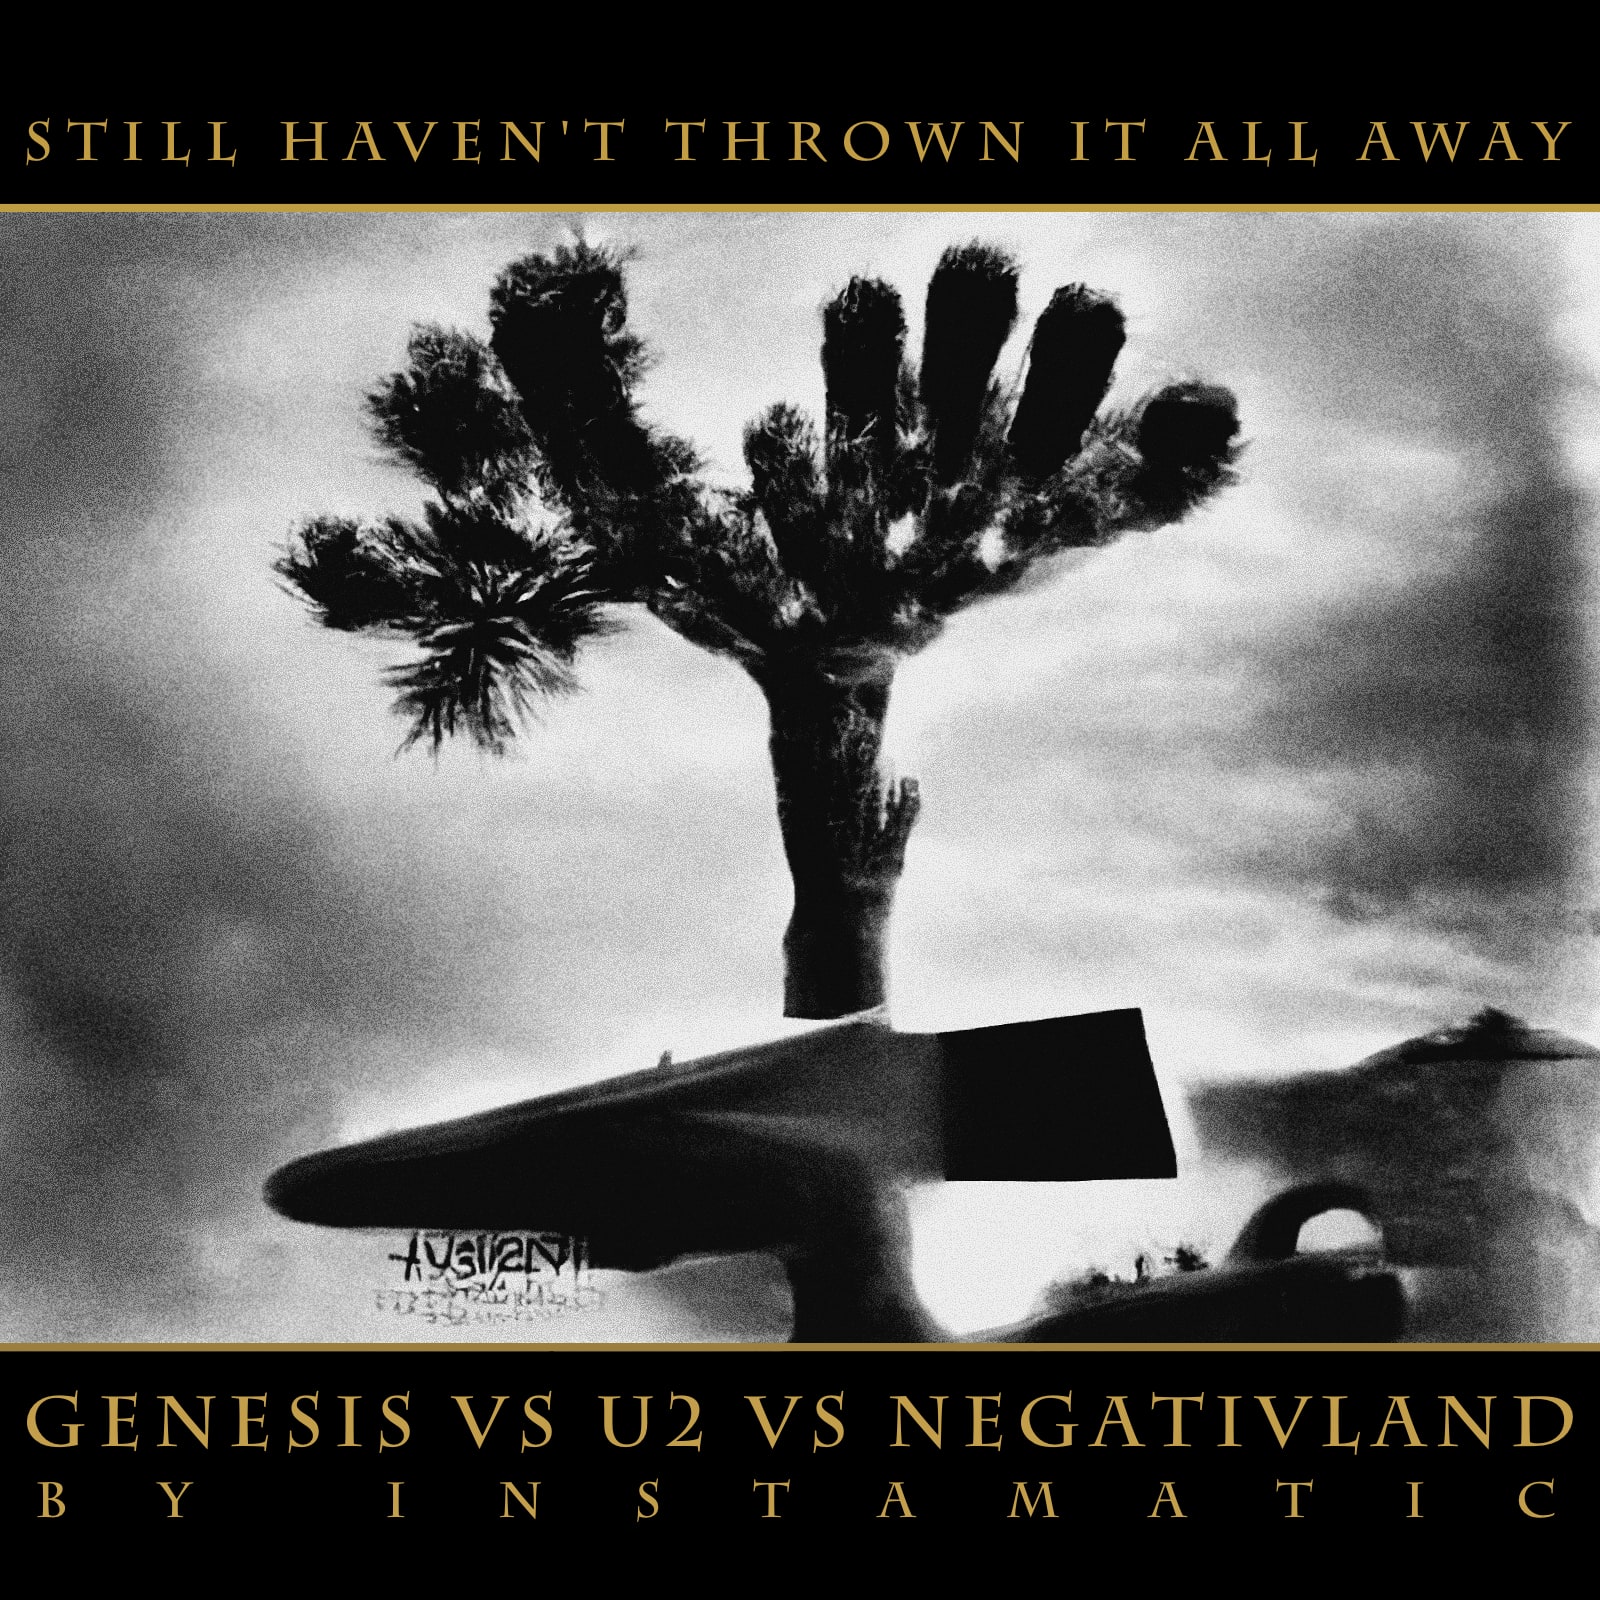 Bootie Top 10 – Genesis vs U2 vs Negativland